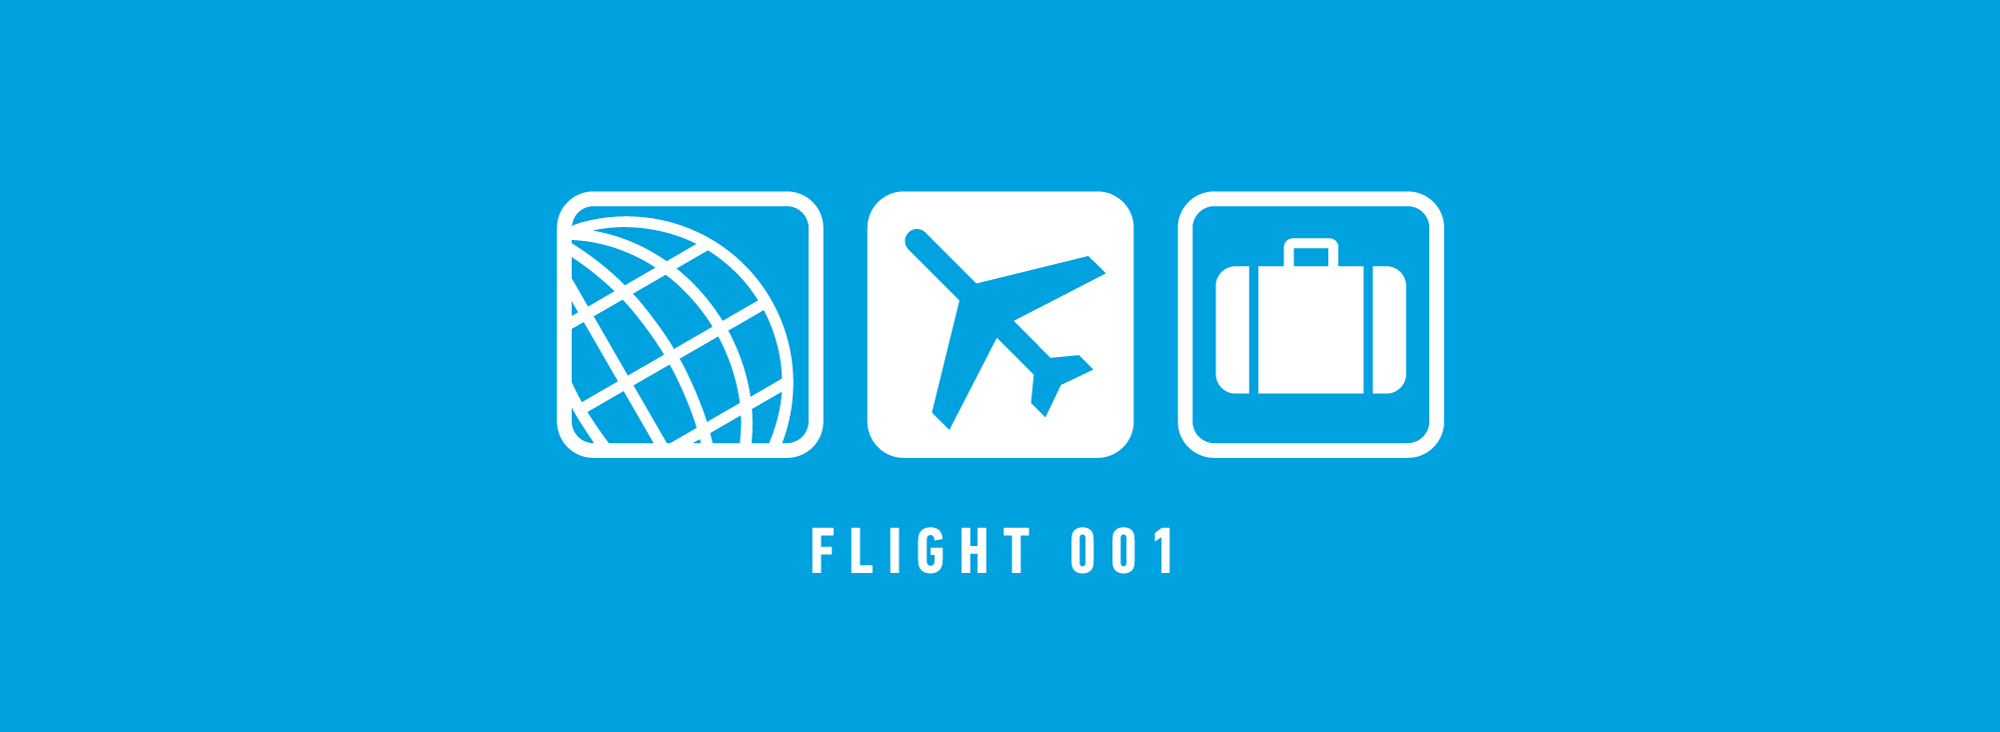 flight 001 logo